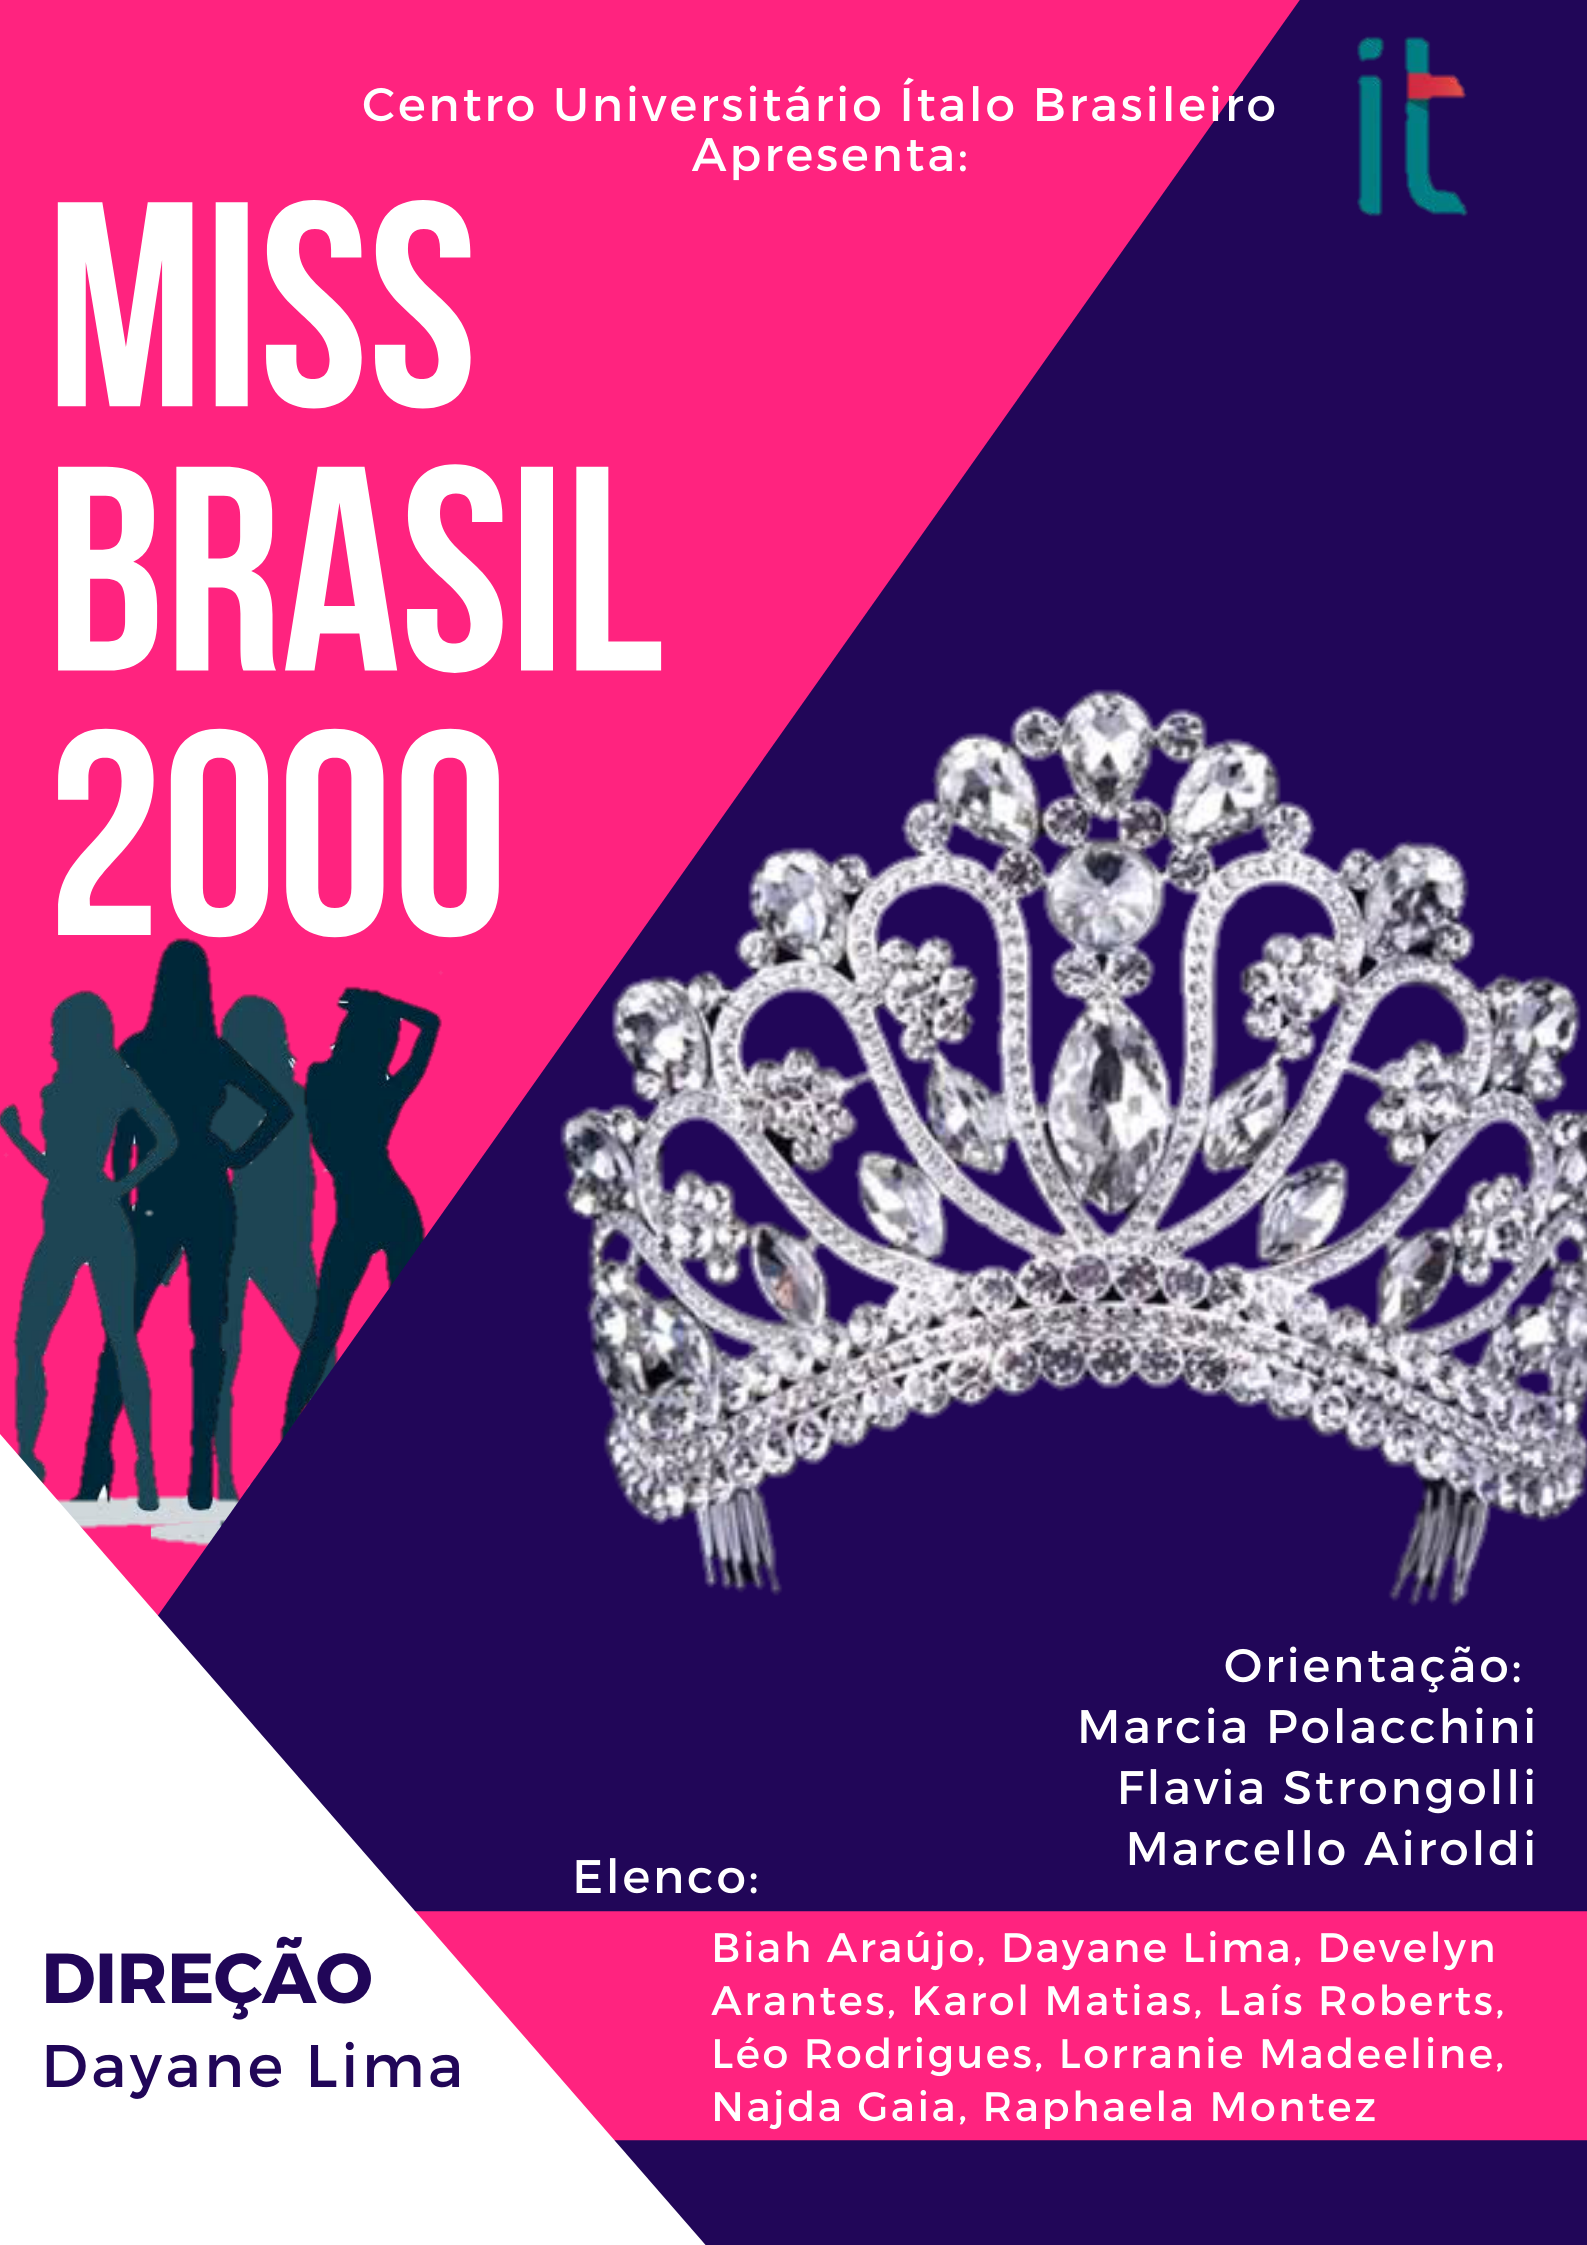 MISS BRASIL 2000 – Ítalo Play